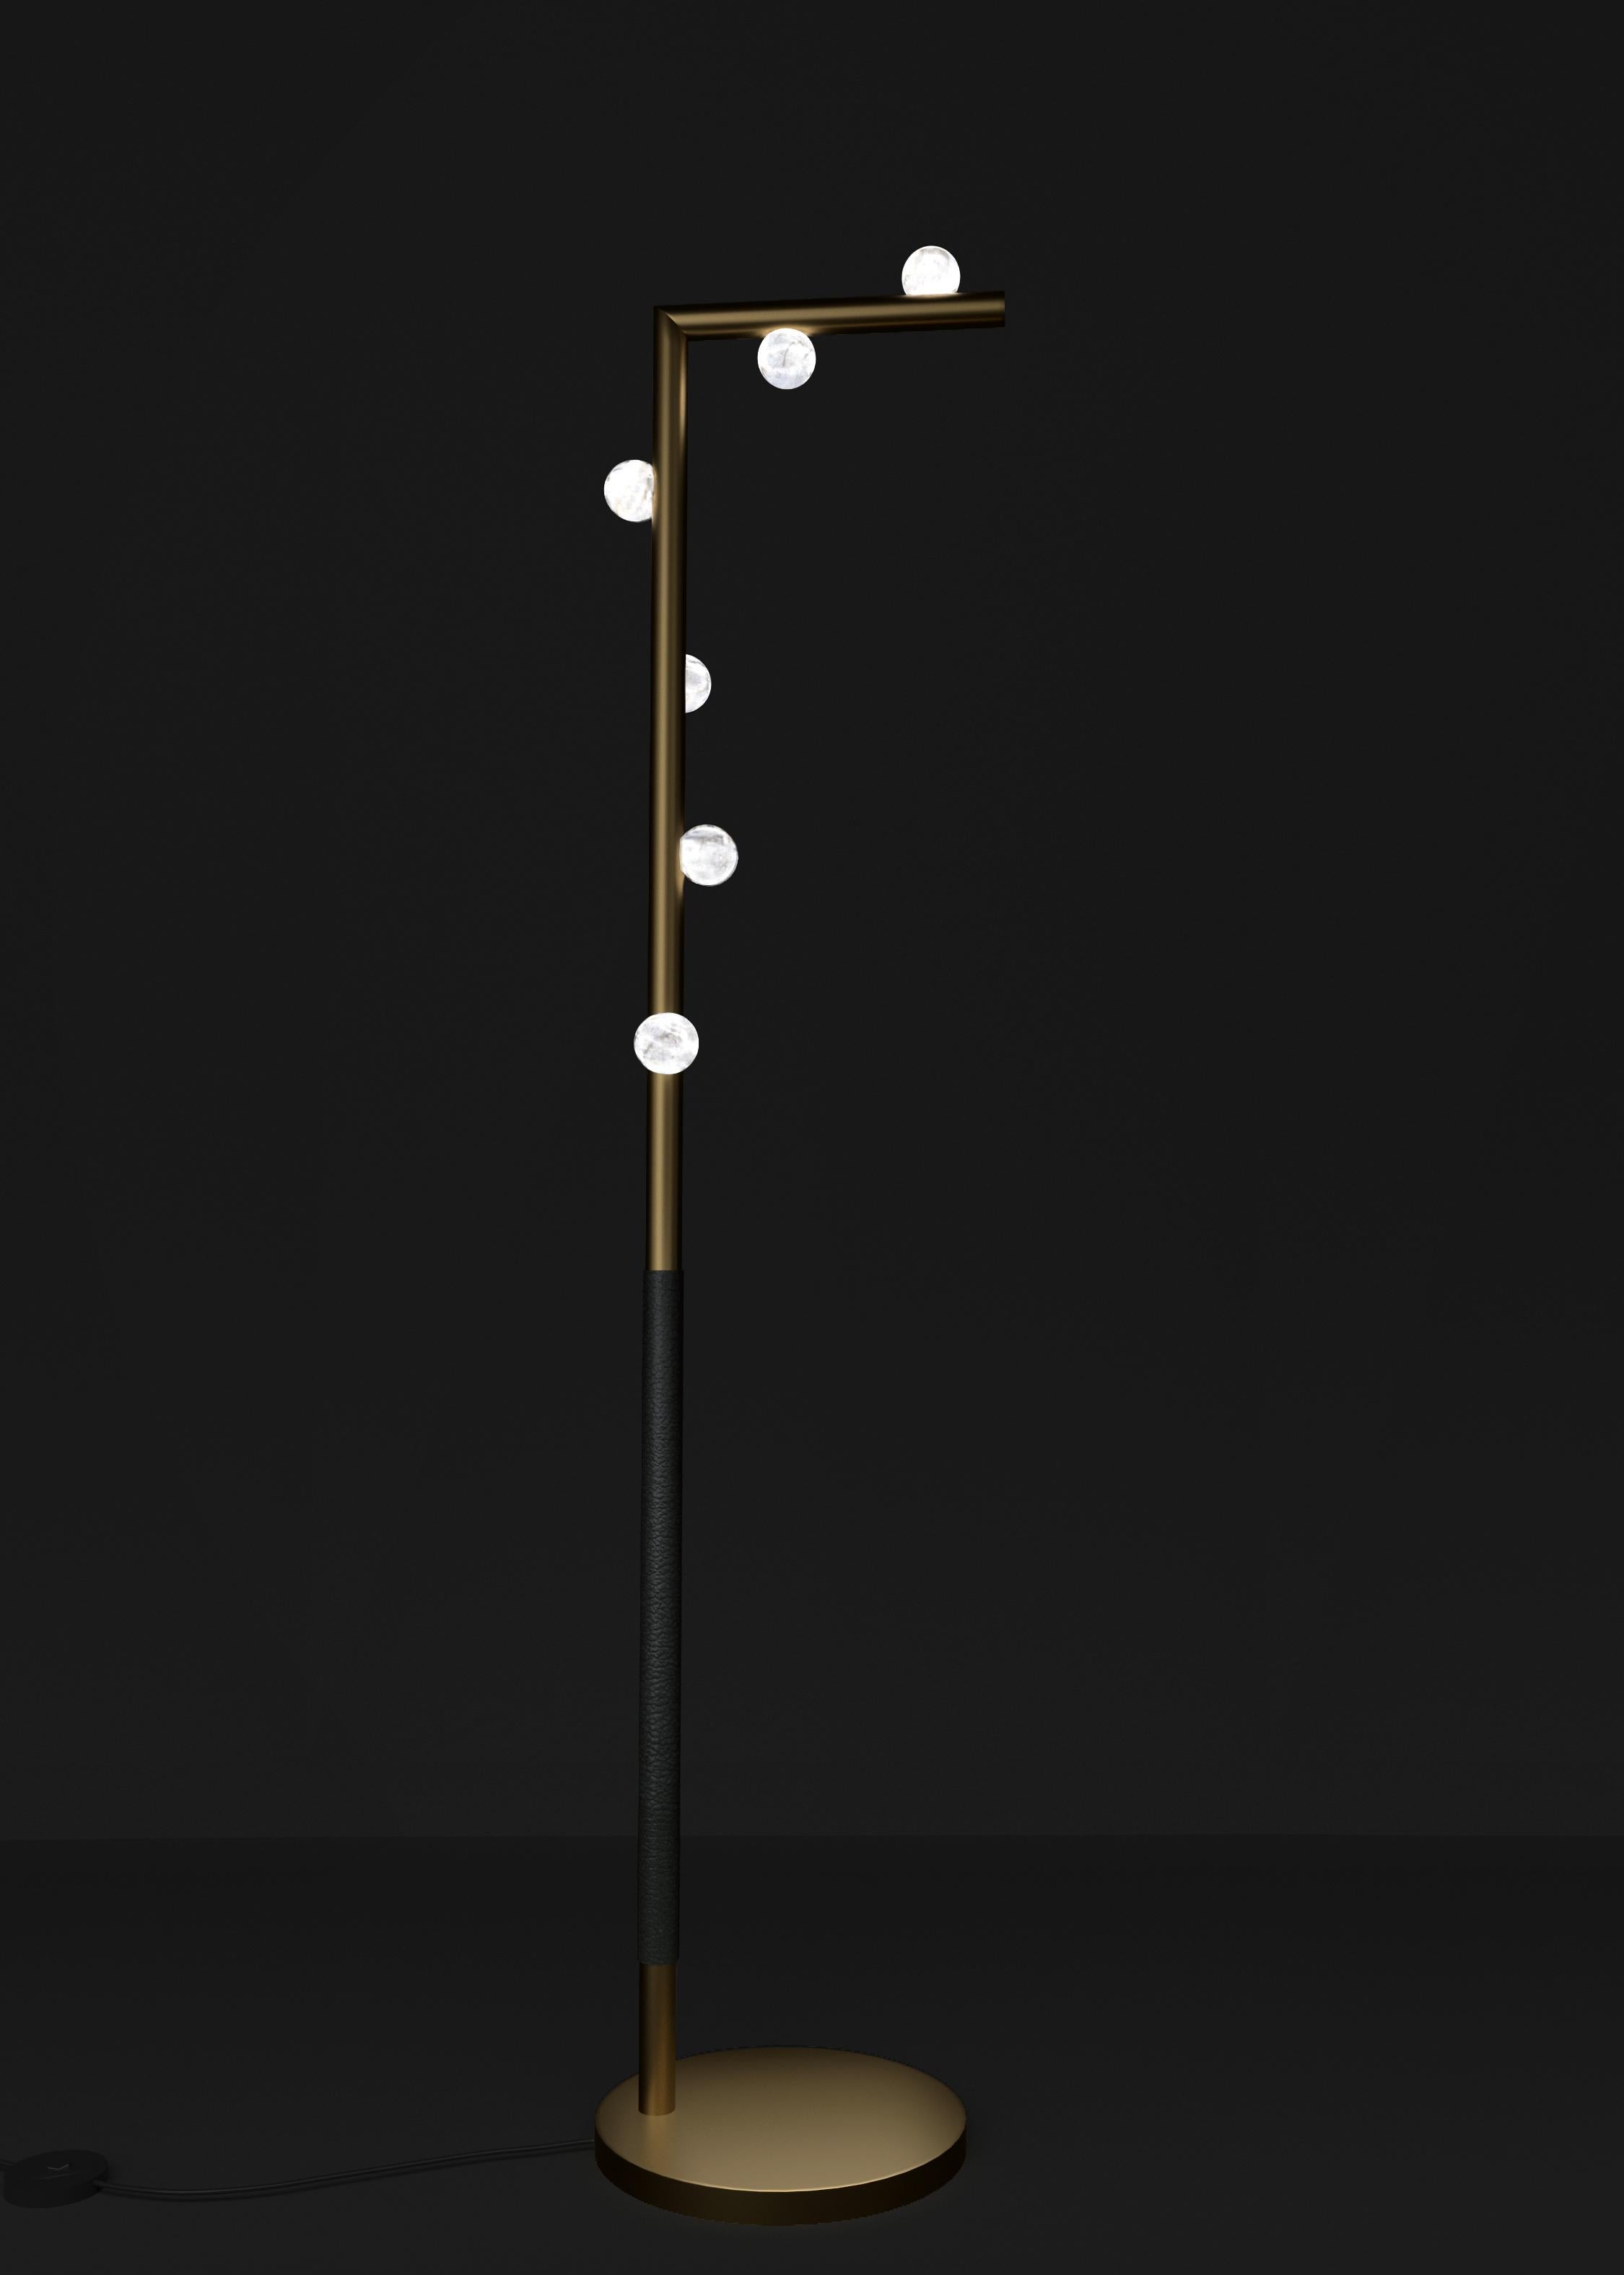 Demetra Bronze-Stehlampe von Alabastro Italiano
Abmessungen: T 30 x B 37 x H 158 cm.
MATERIALIEN: Weißer Alabaster, Bronze und Leder.

Erhältlich in verschiedenen Ausführungen: Glänzendes Silber, Bronze, gebürstetes Messing, Ruggine von Florenz,